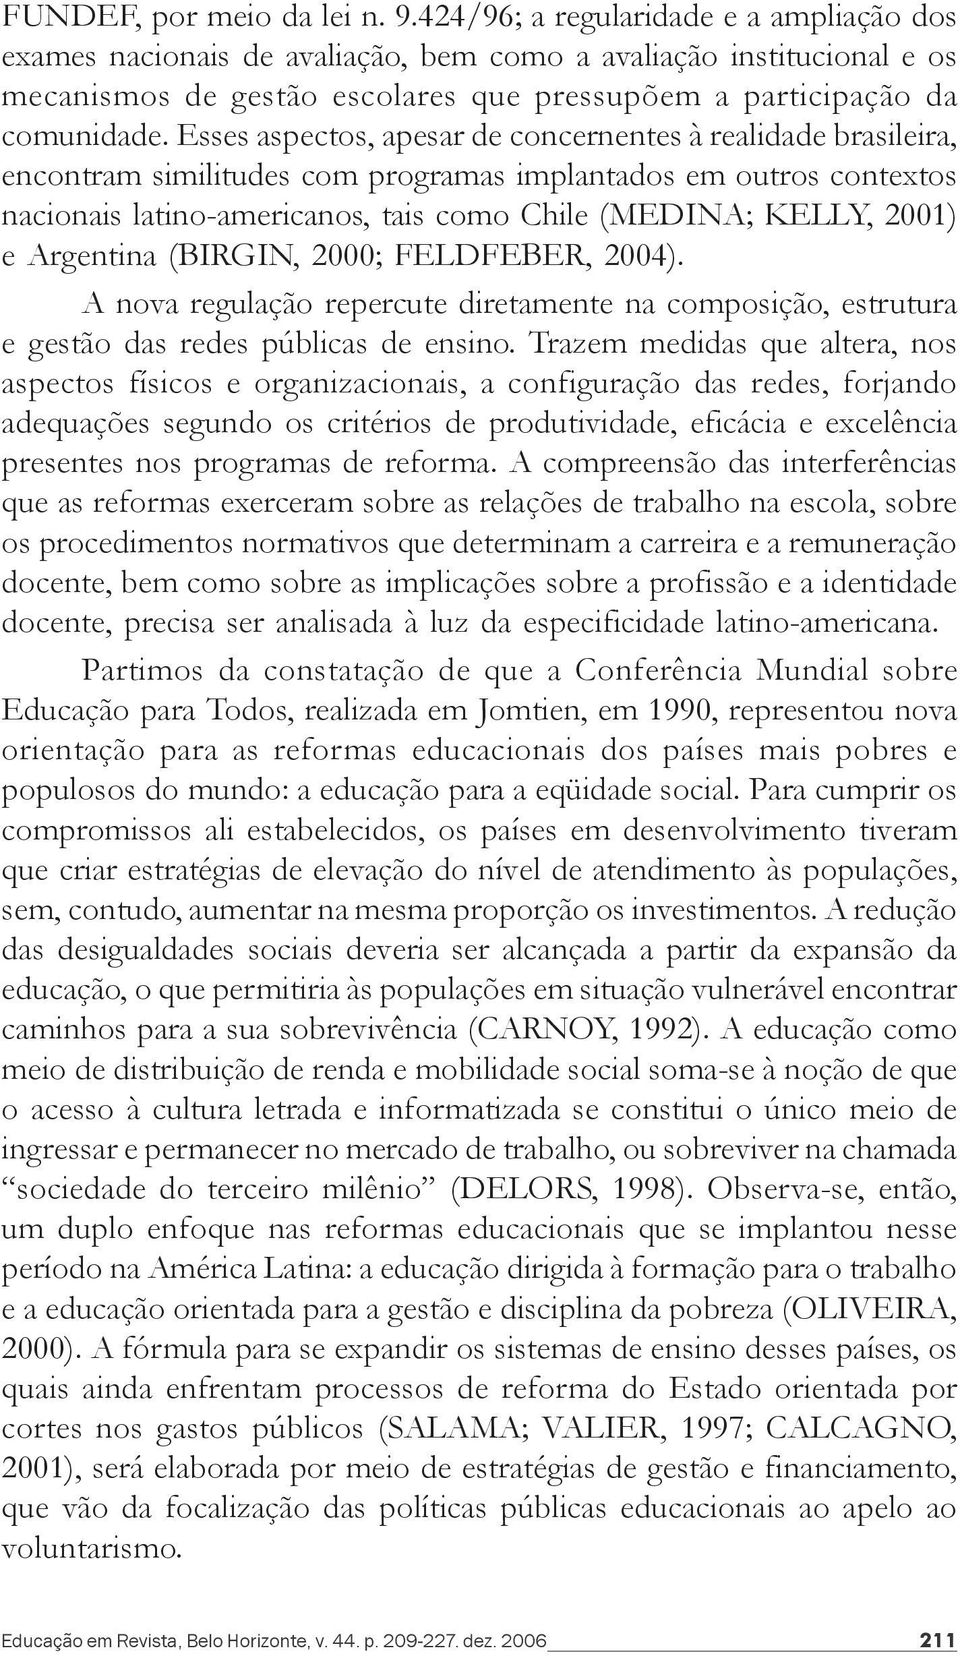 Esses aspectos, apesar de concernentes à realidade brasileira, encontram similitudes com programas implantados em outros contextos nacionais latino-americanos, tais como Chile (MEDINA; KELLY, 2001) e